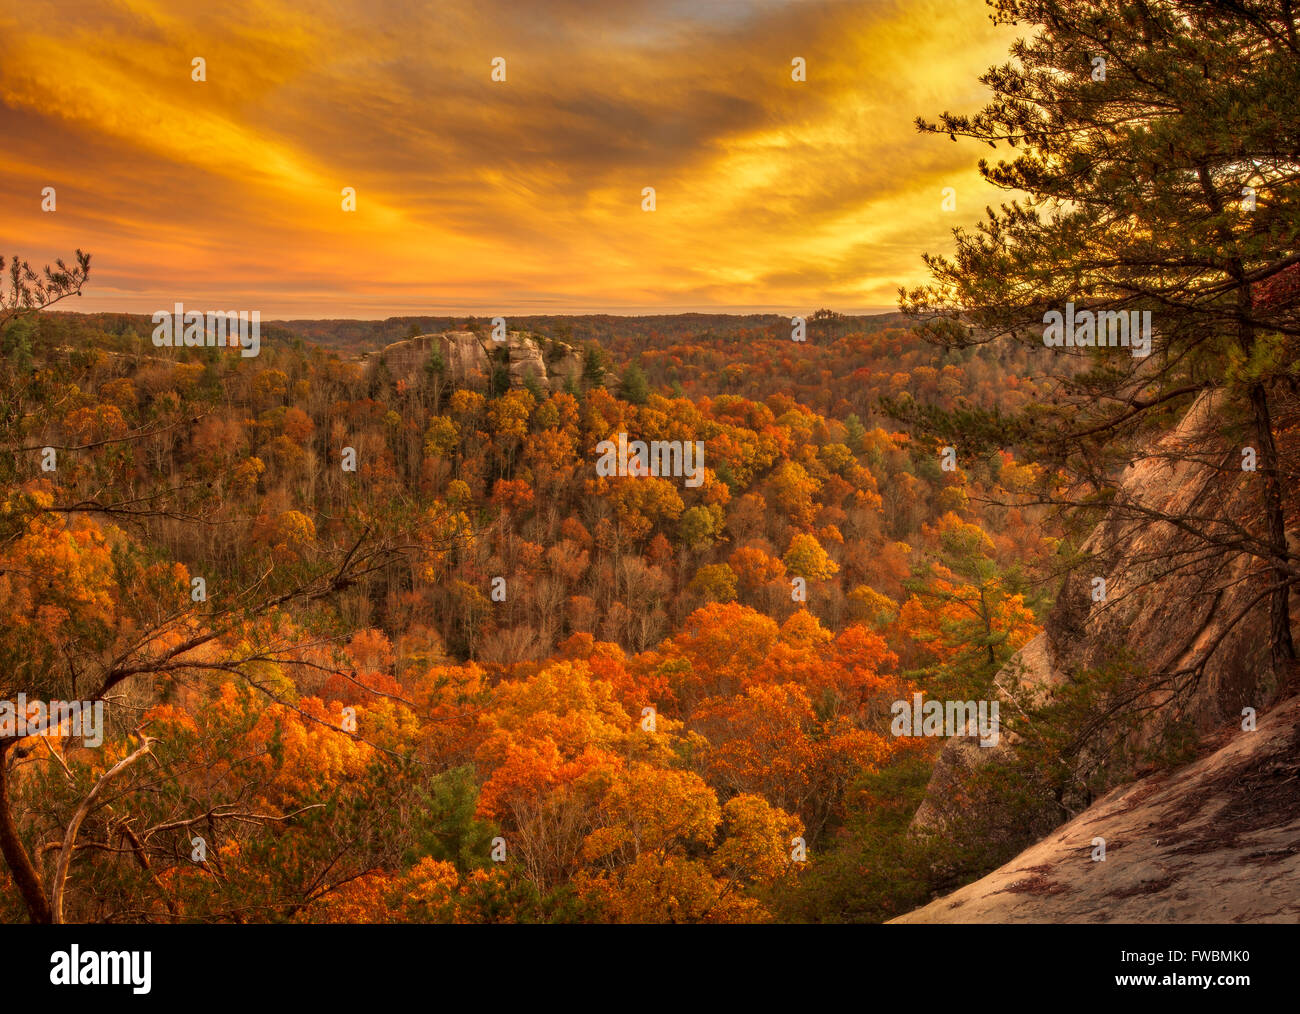 Il cielo e la foresta rispecchiano le altre con le esplosioni di vivaci colori gialli e le arance in un nitido serata autunnale in Kentucky. Foto Stock